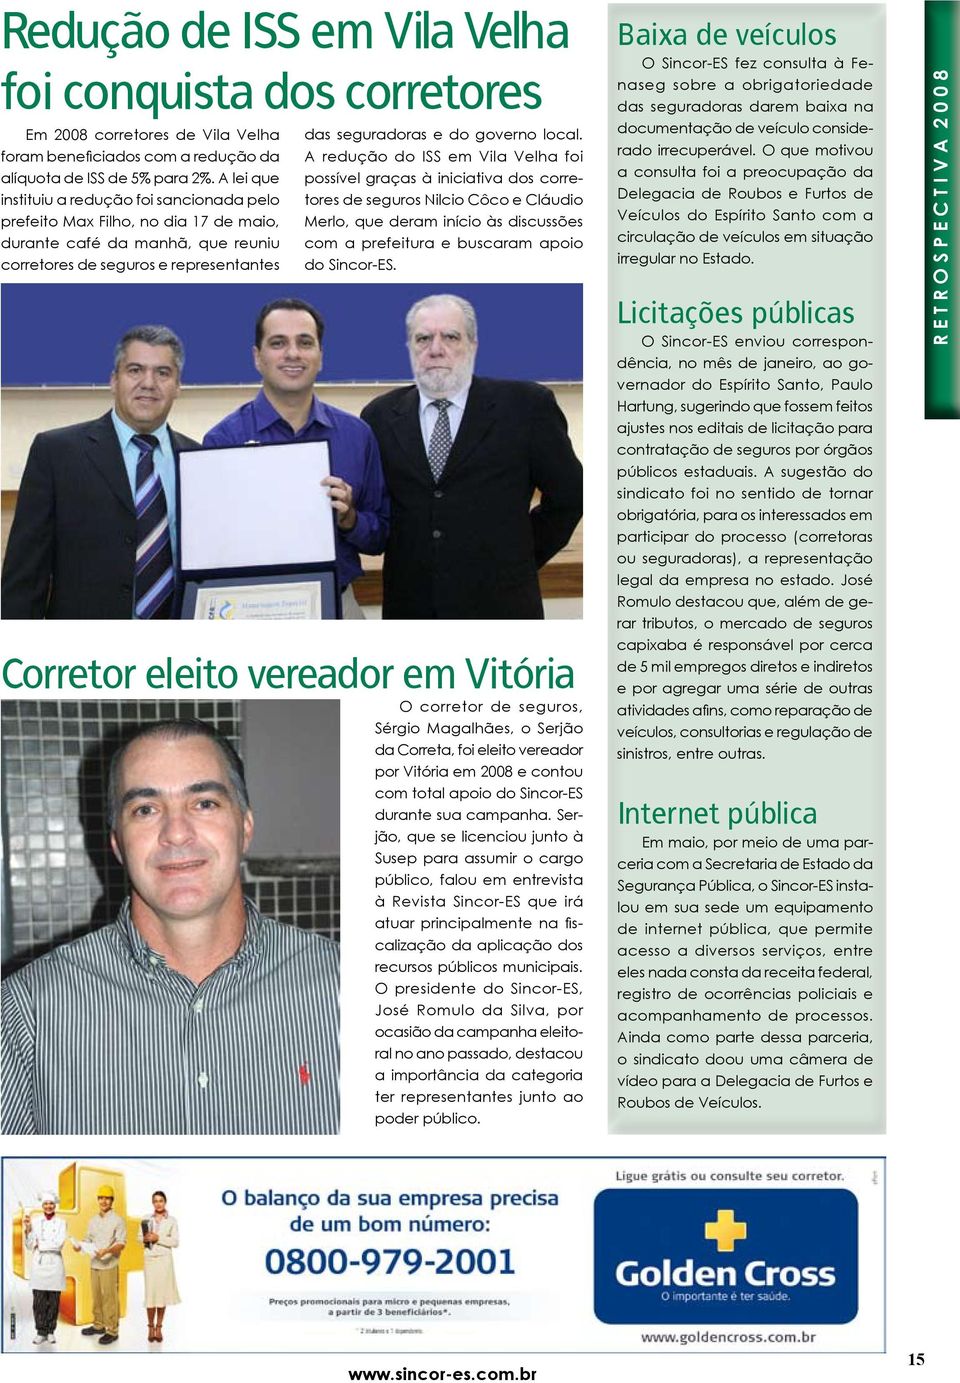 A redução do ISS em Vila Velha foi possível graças à iniciativa dos corretores de seguros Nilcio Côco e Cláudio Merlo, que deram início às discussões com a prefeitura e buscaram apoio do Sincor-ES.